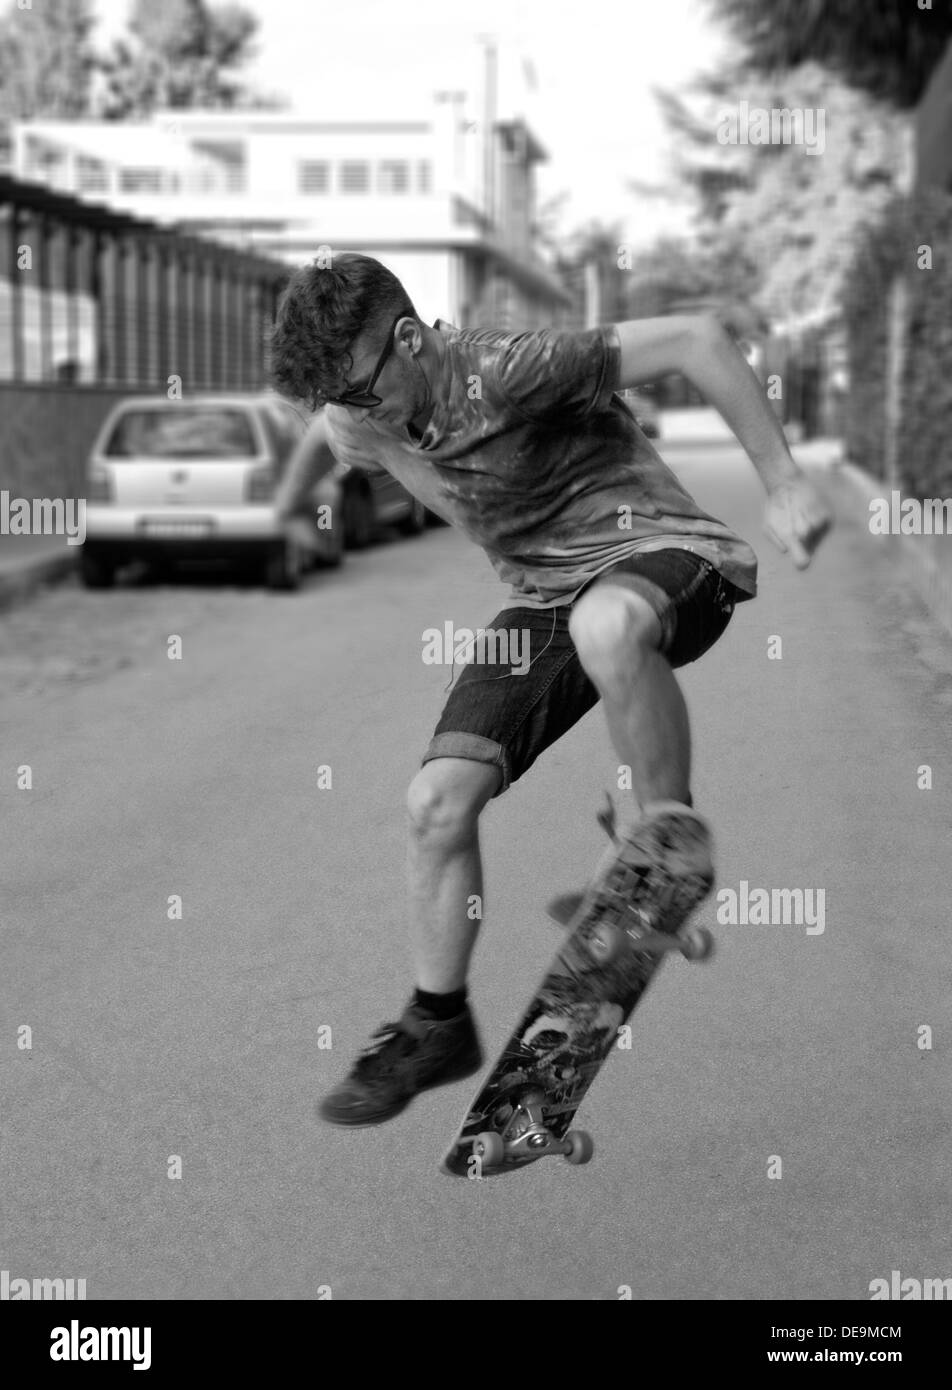 Street skateur professionnel faisant Ollie trick Banque D'Images